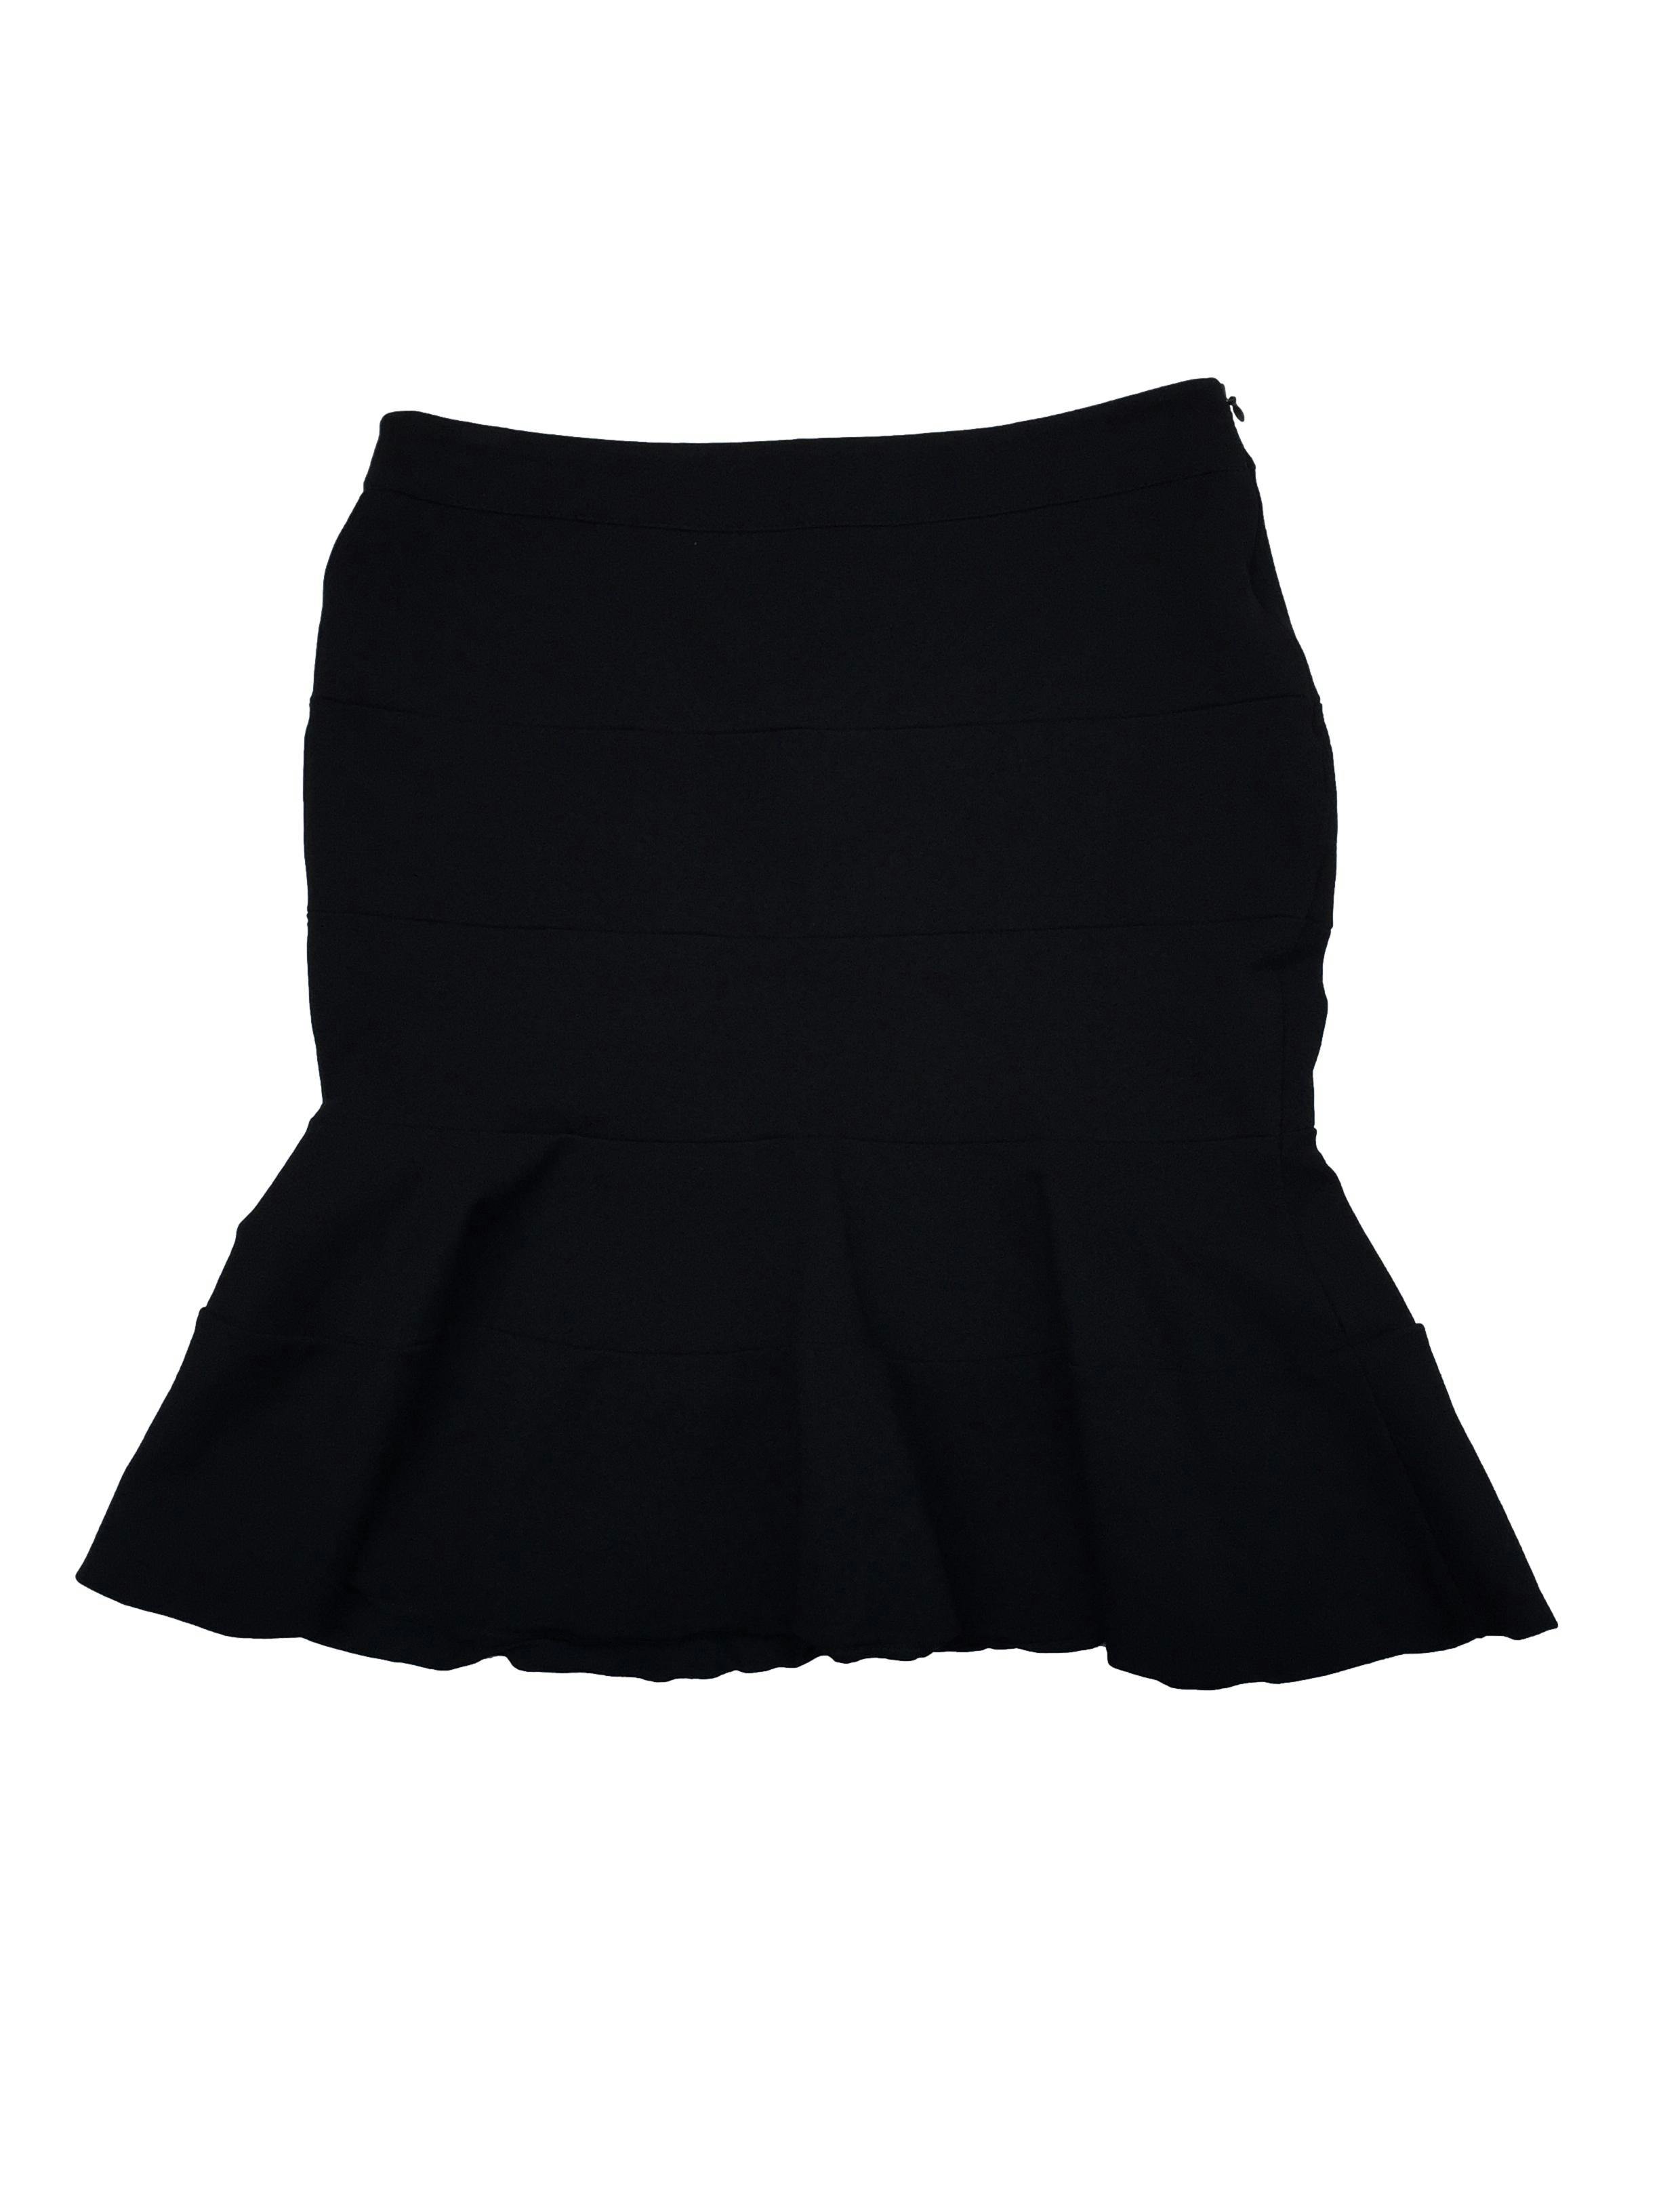  Skirts N Scarves Blusa corta de algodón y licra negra